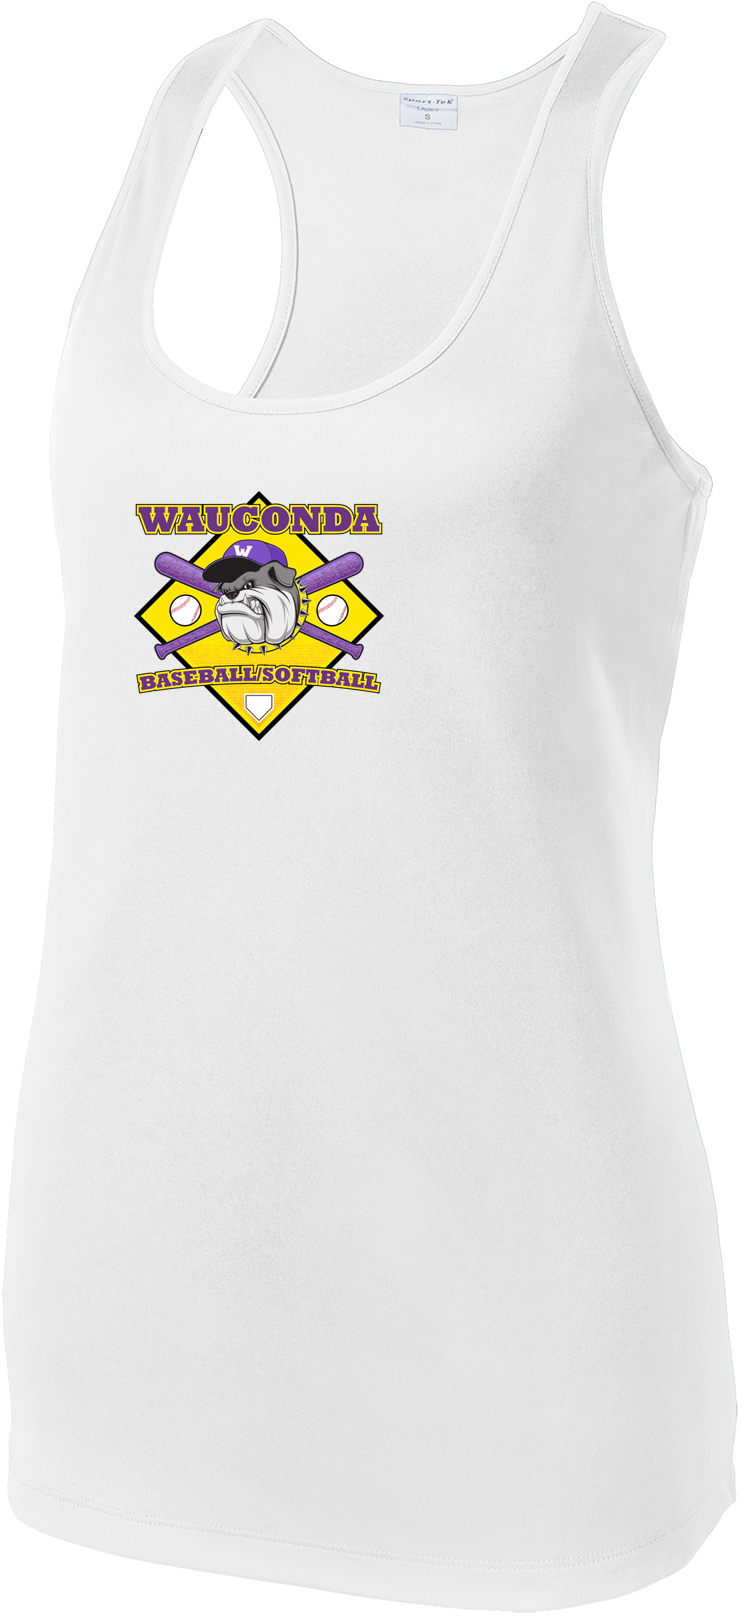 Wauconda Baseball & Softball Racerback Tank